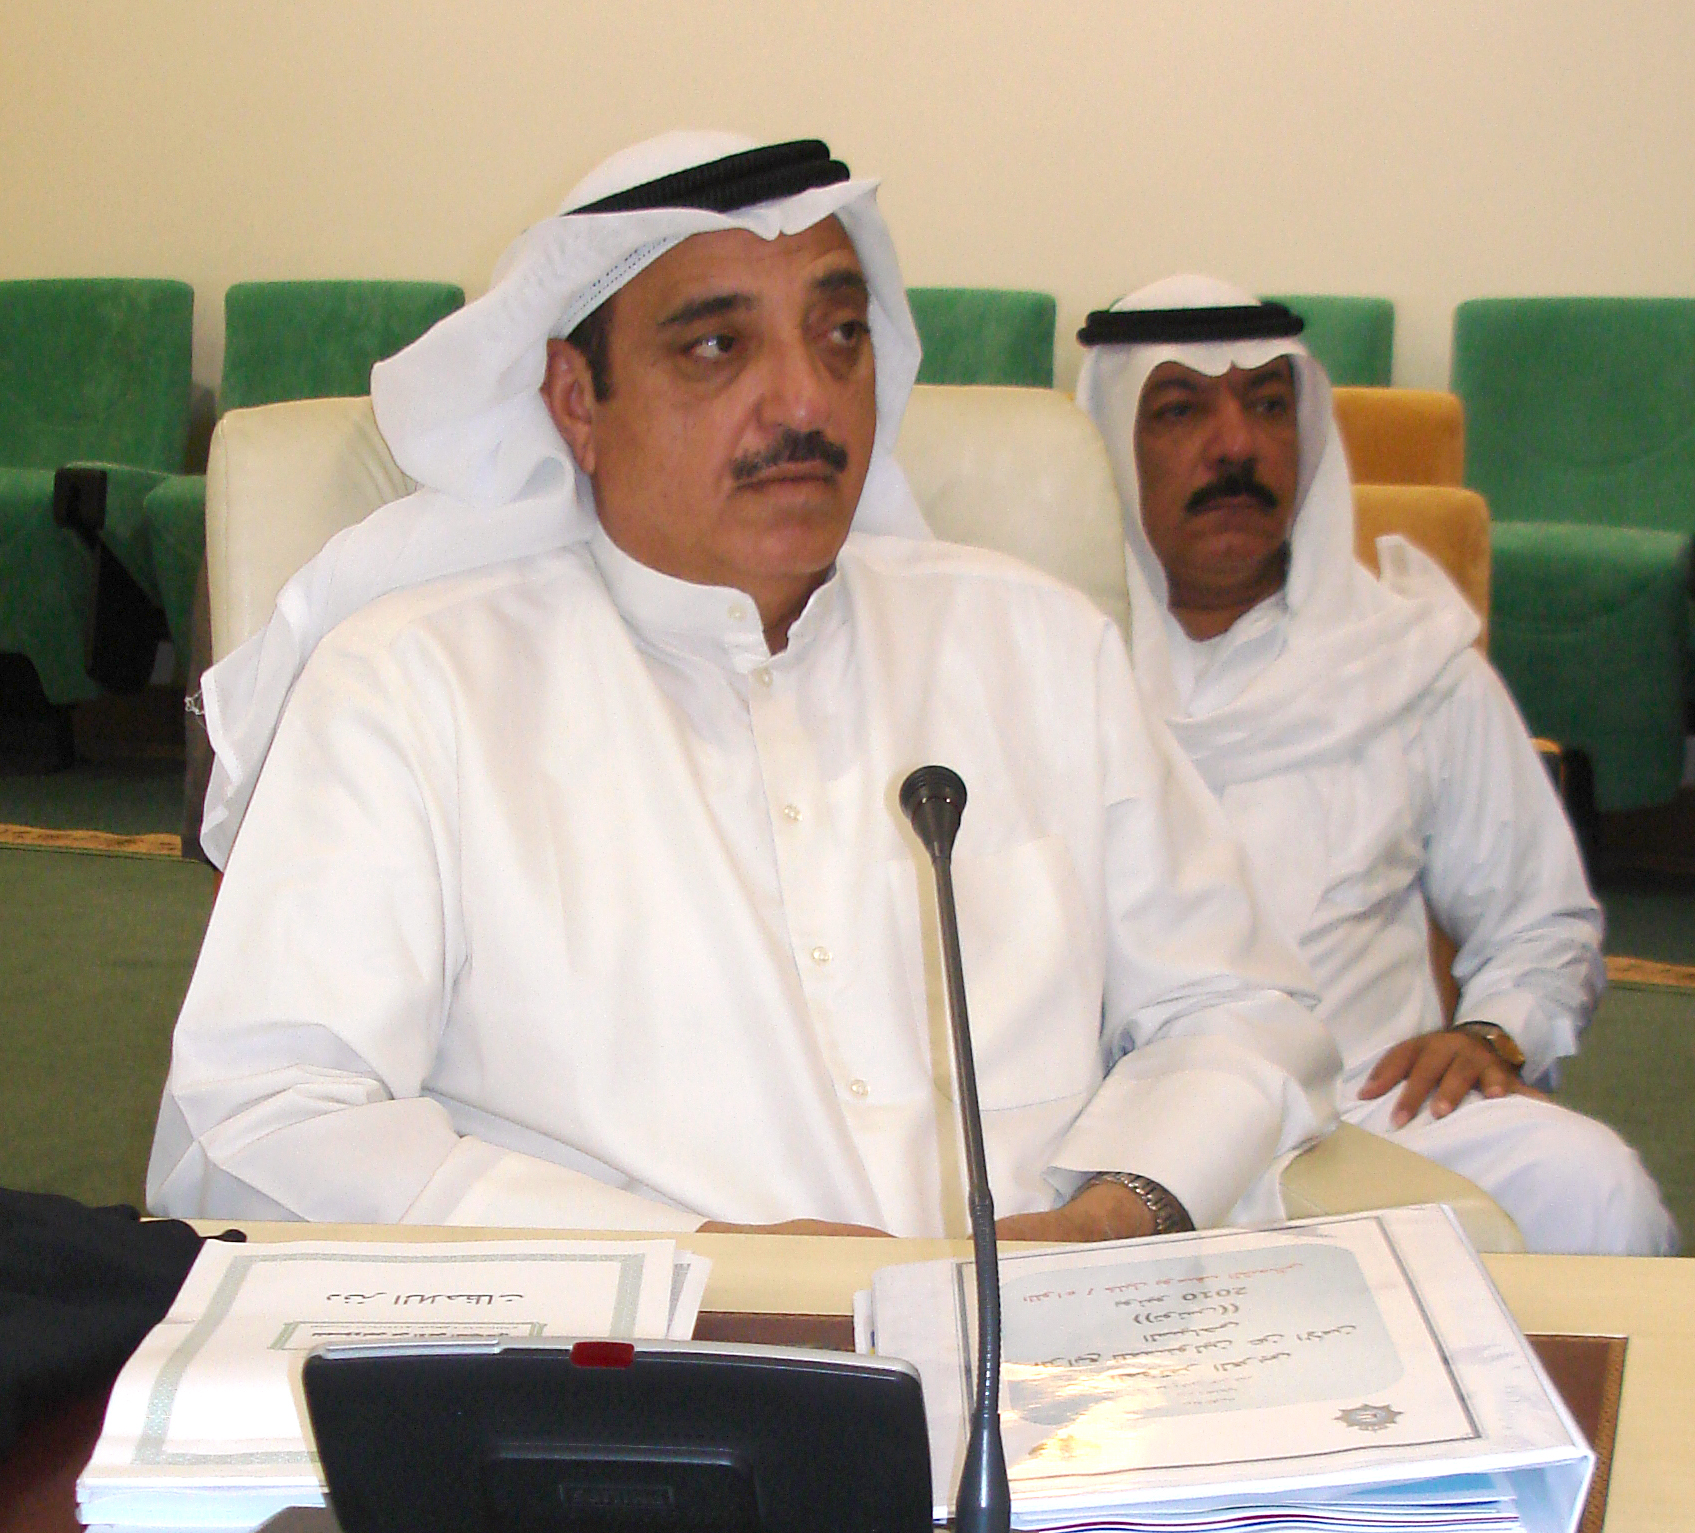 وكيل وزارة الداخلية المساعد لشؤون الامن العام بدولة الكويت اللواء خليل الشمالي